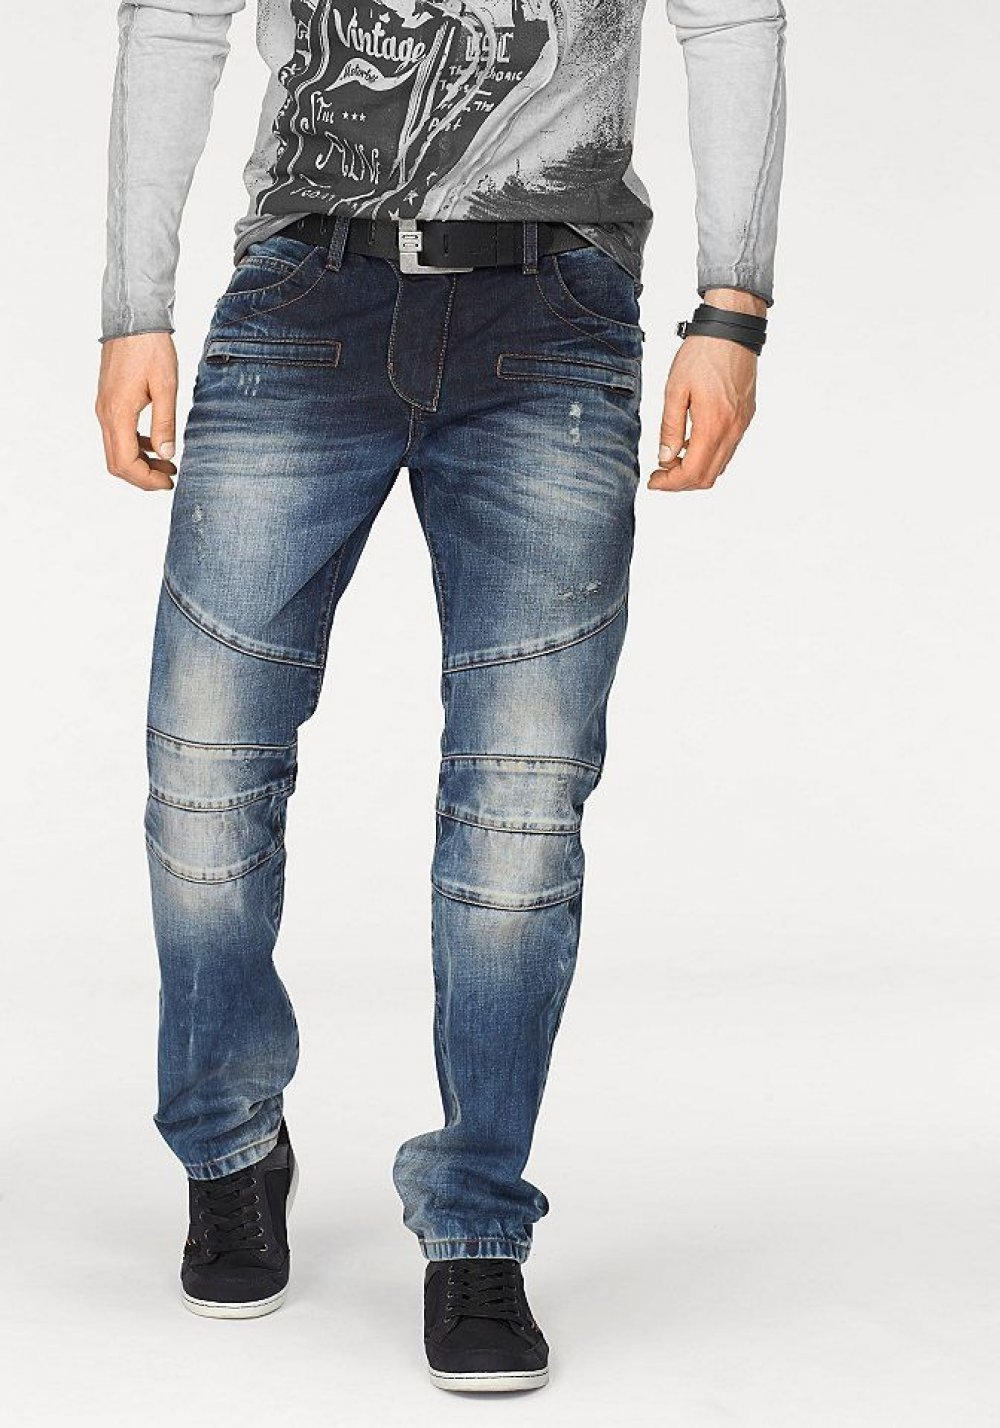 Купить джинсы мужские красноярск. Джинсы со швами мужские. Потертые джинсы мужские. Джинсы со вставками мужские. Стильные мужские джинсы.